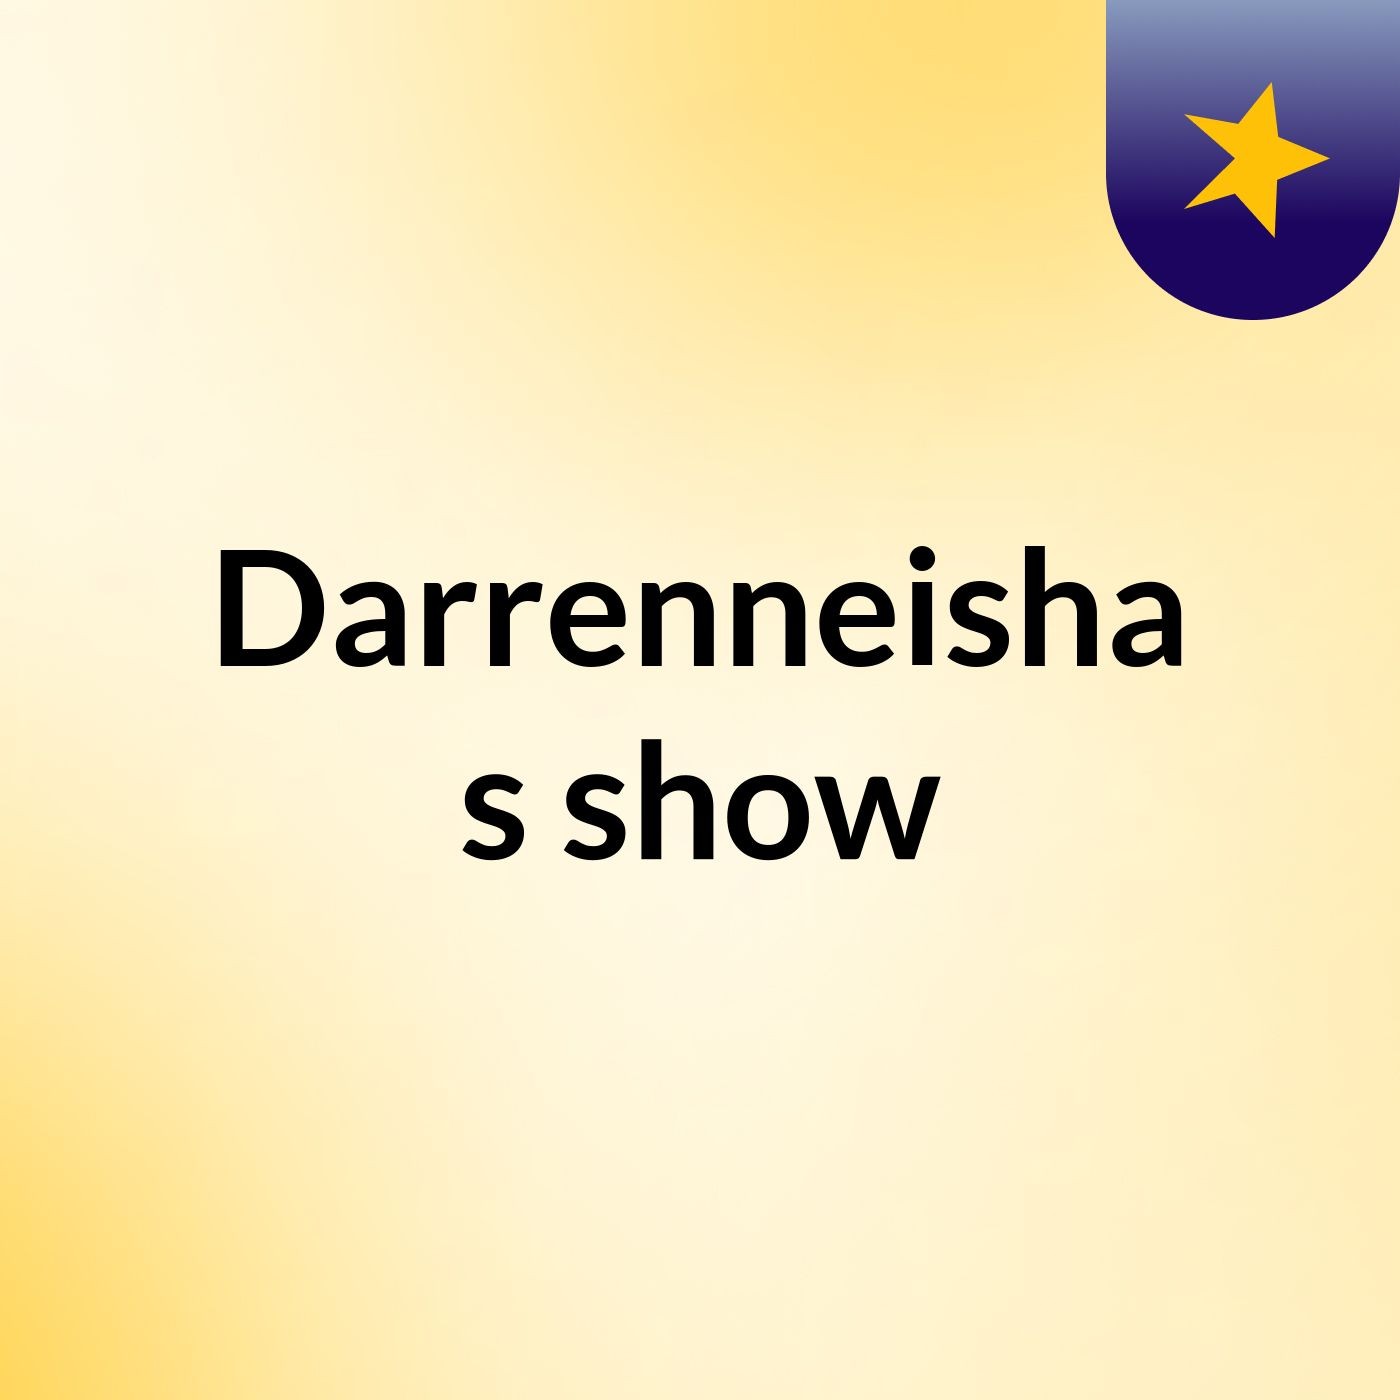 Episode 3 - Darrenneisha's show